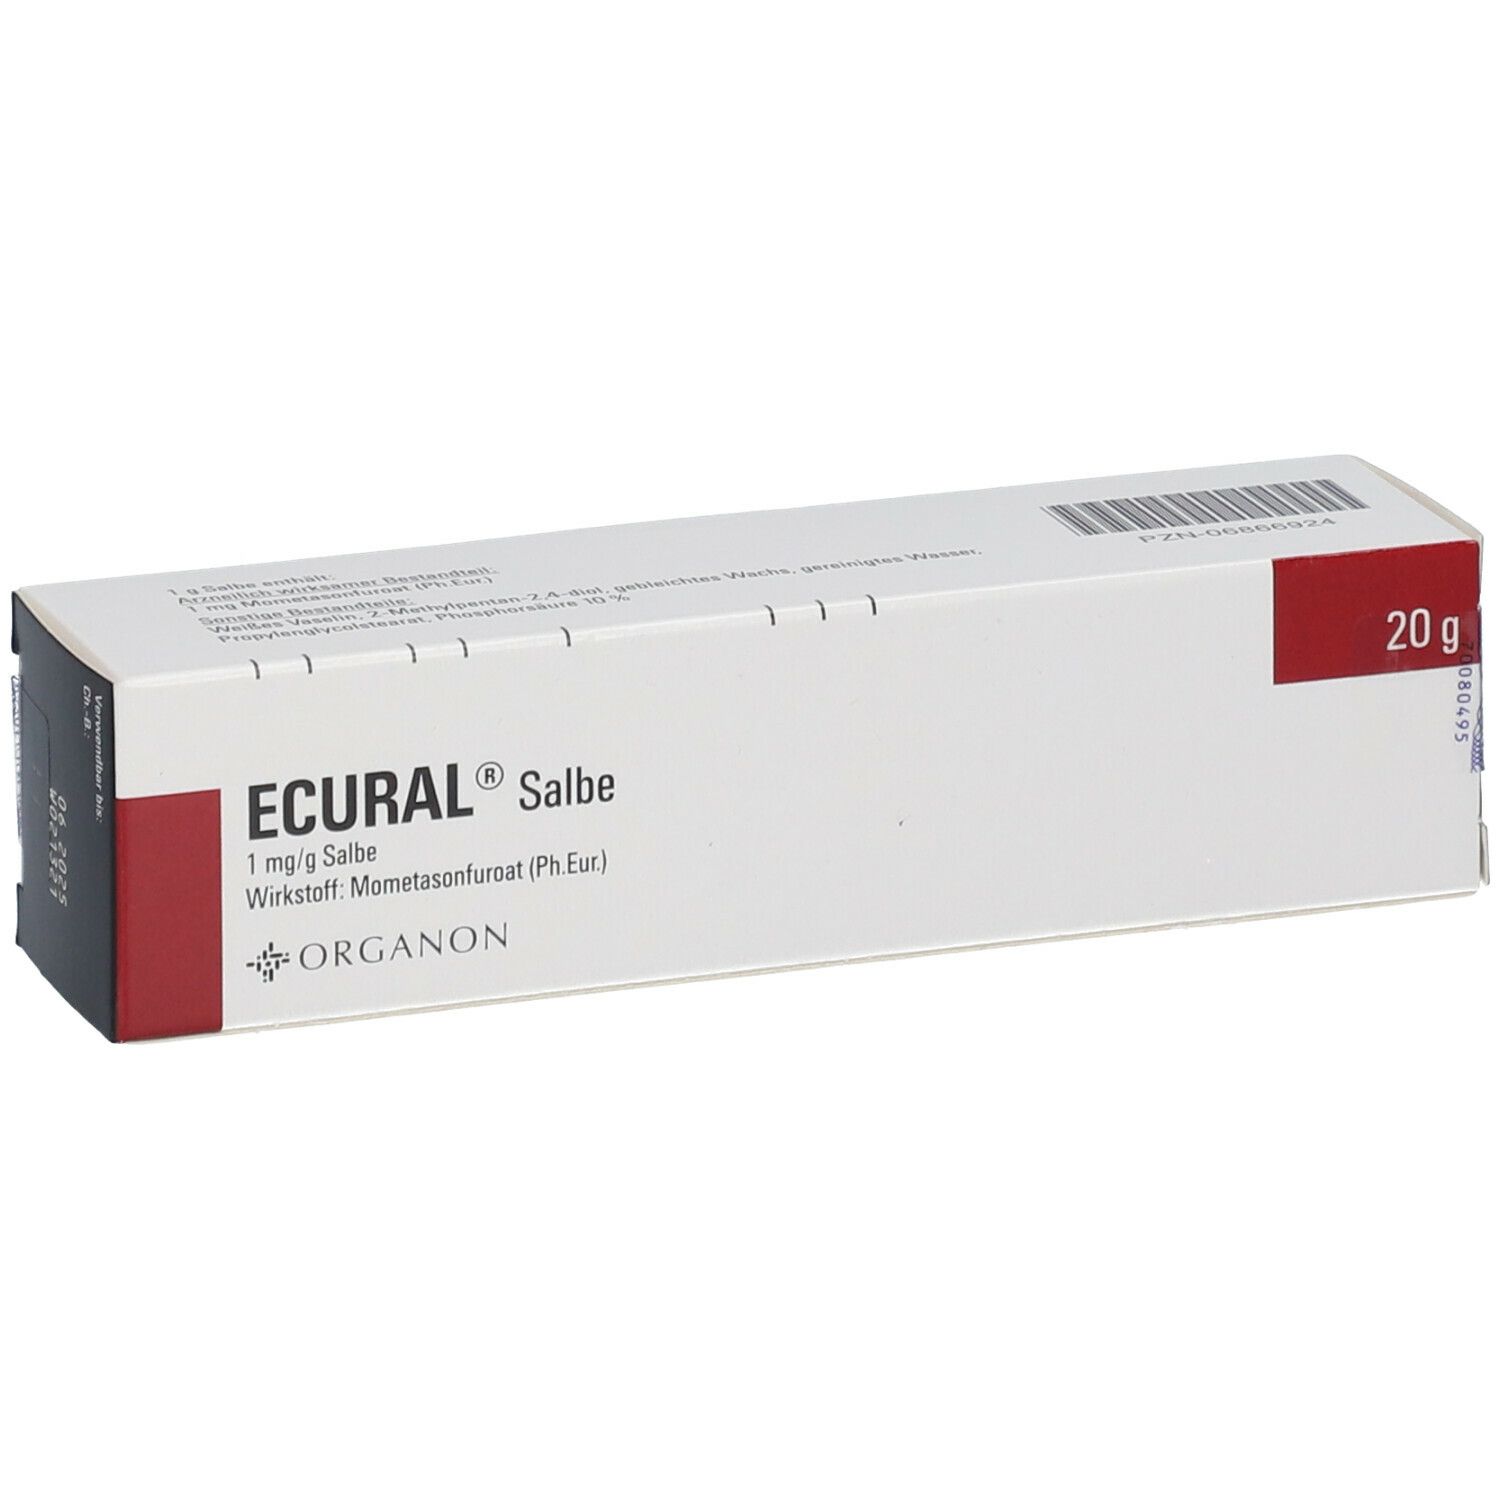 ECURAL® Salbe 1 mg/ml